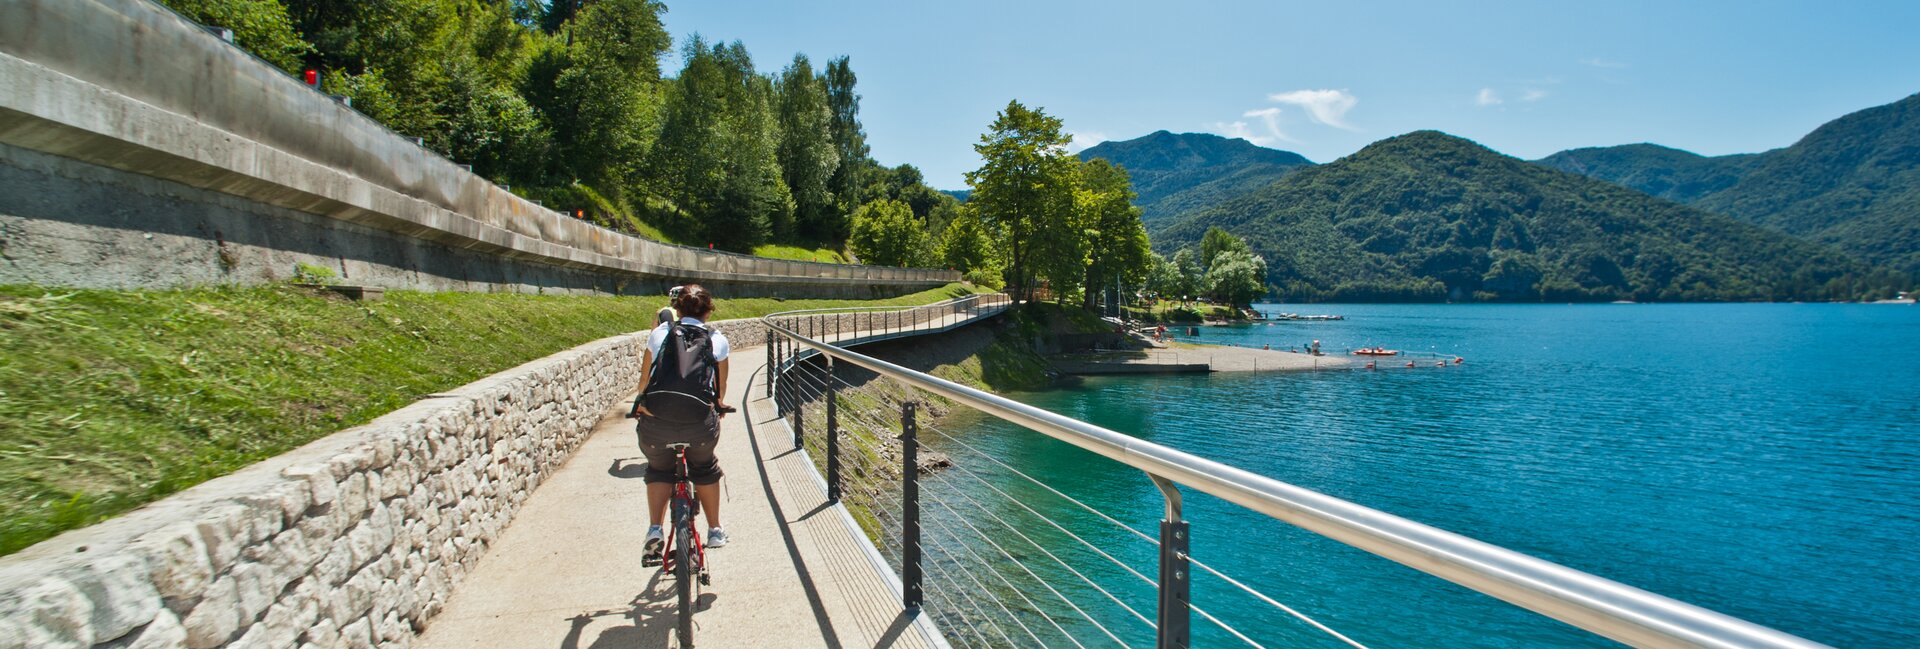 Percorsi semplici da fare in bicicletta tra i laghi del Trentino